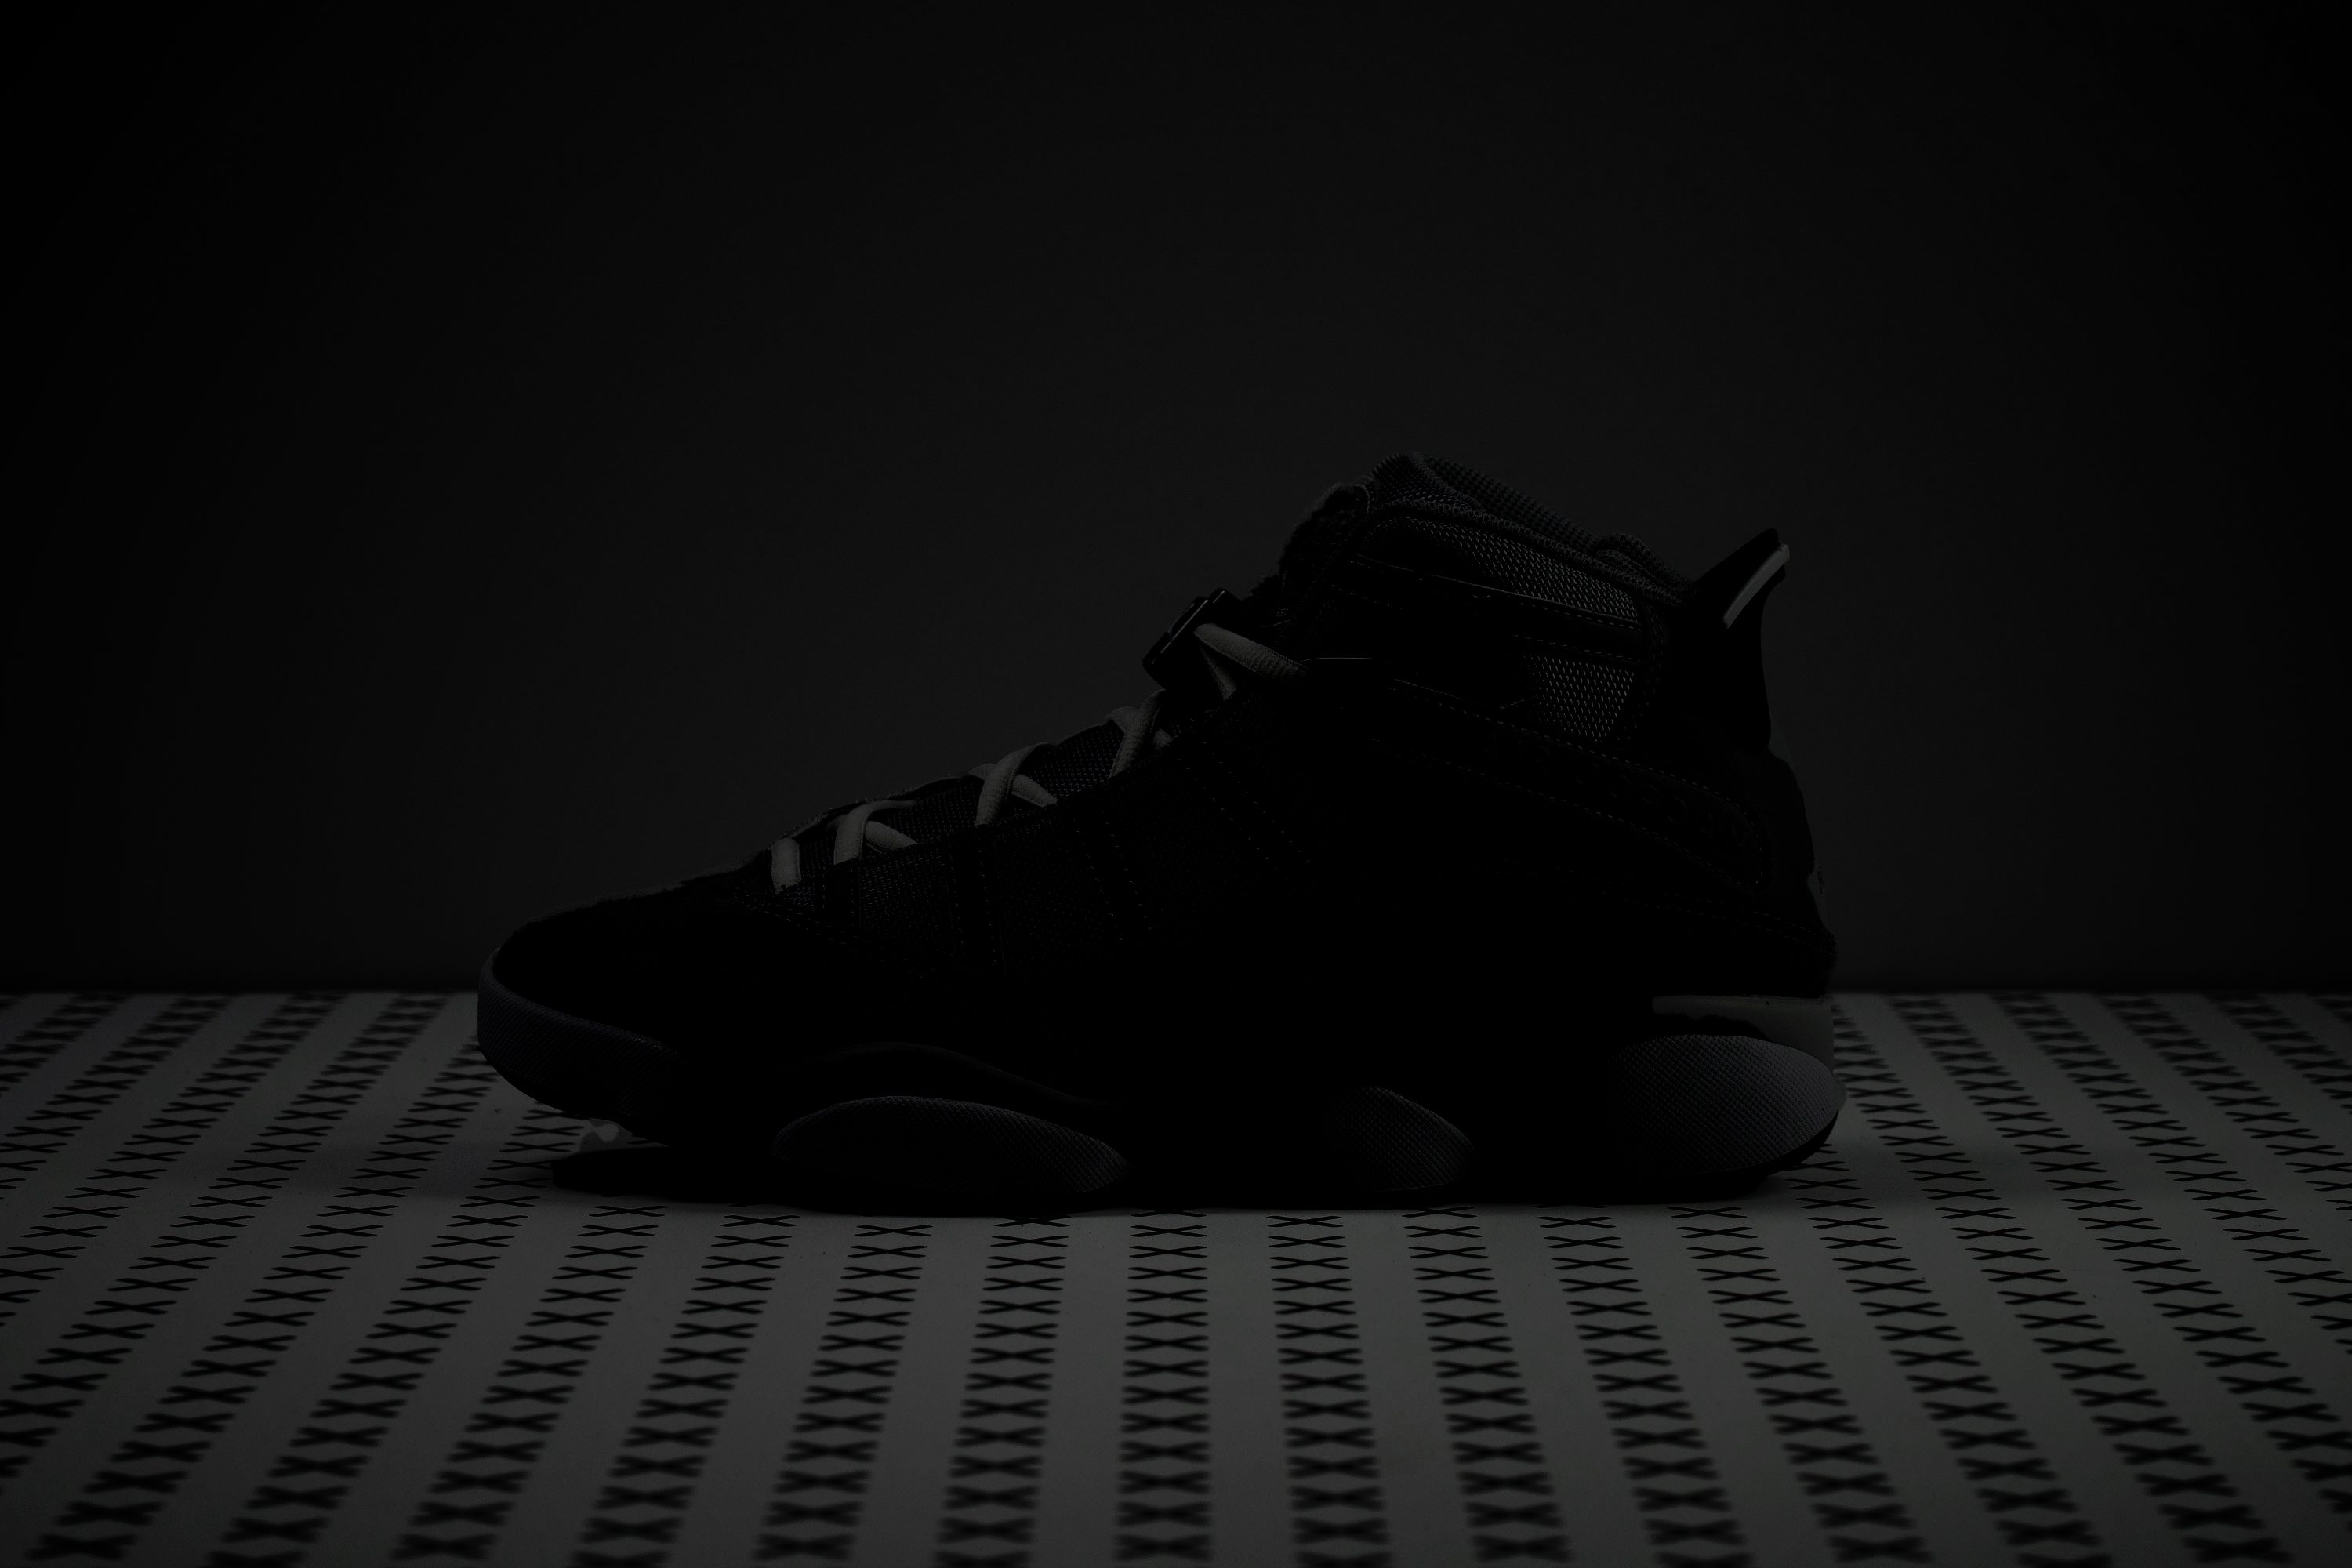 Update 15.12.2022 Die ersten Fotos des Air Jordan 5 SE Craft wurden jetzt auf Instagram Reflective elements